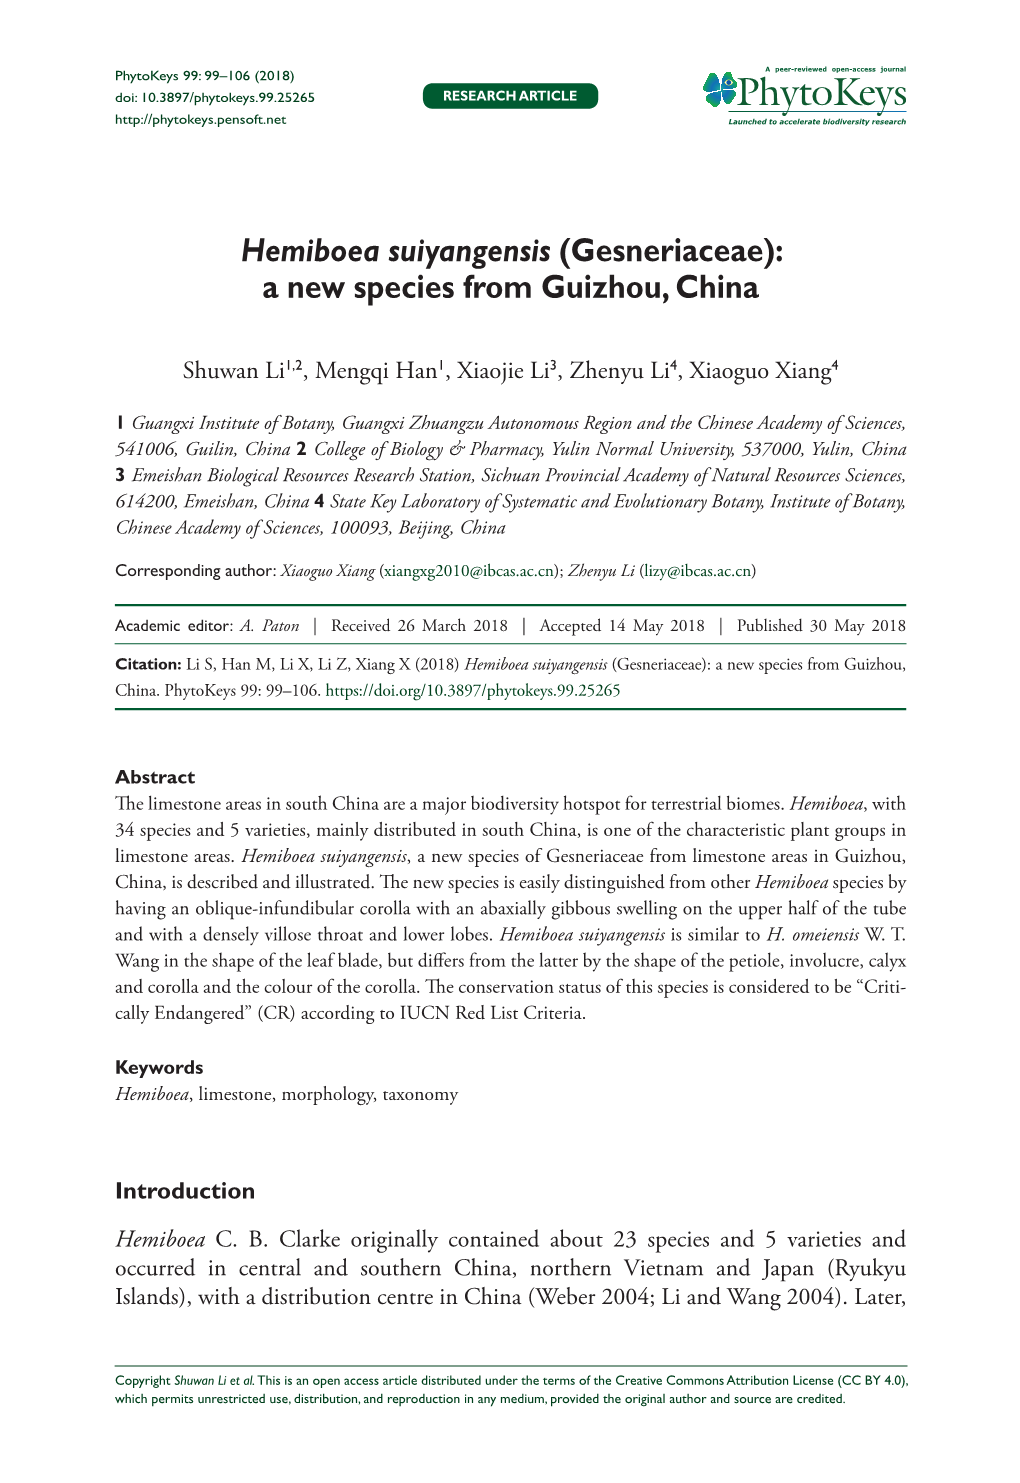 Hemiboea Suiyangensis (Gesneriaceae): a New Species from Guizhou, China